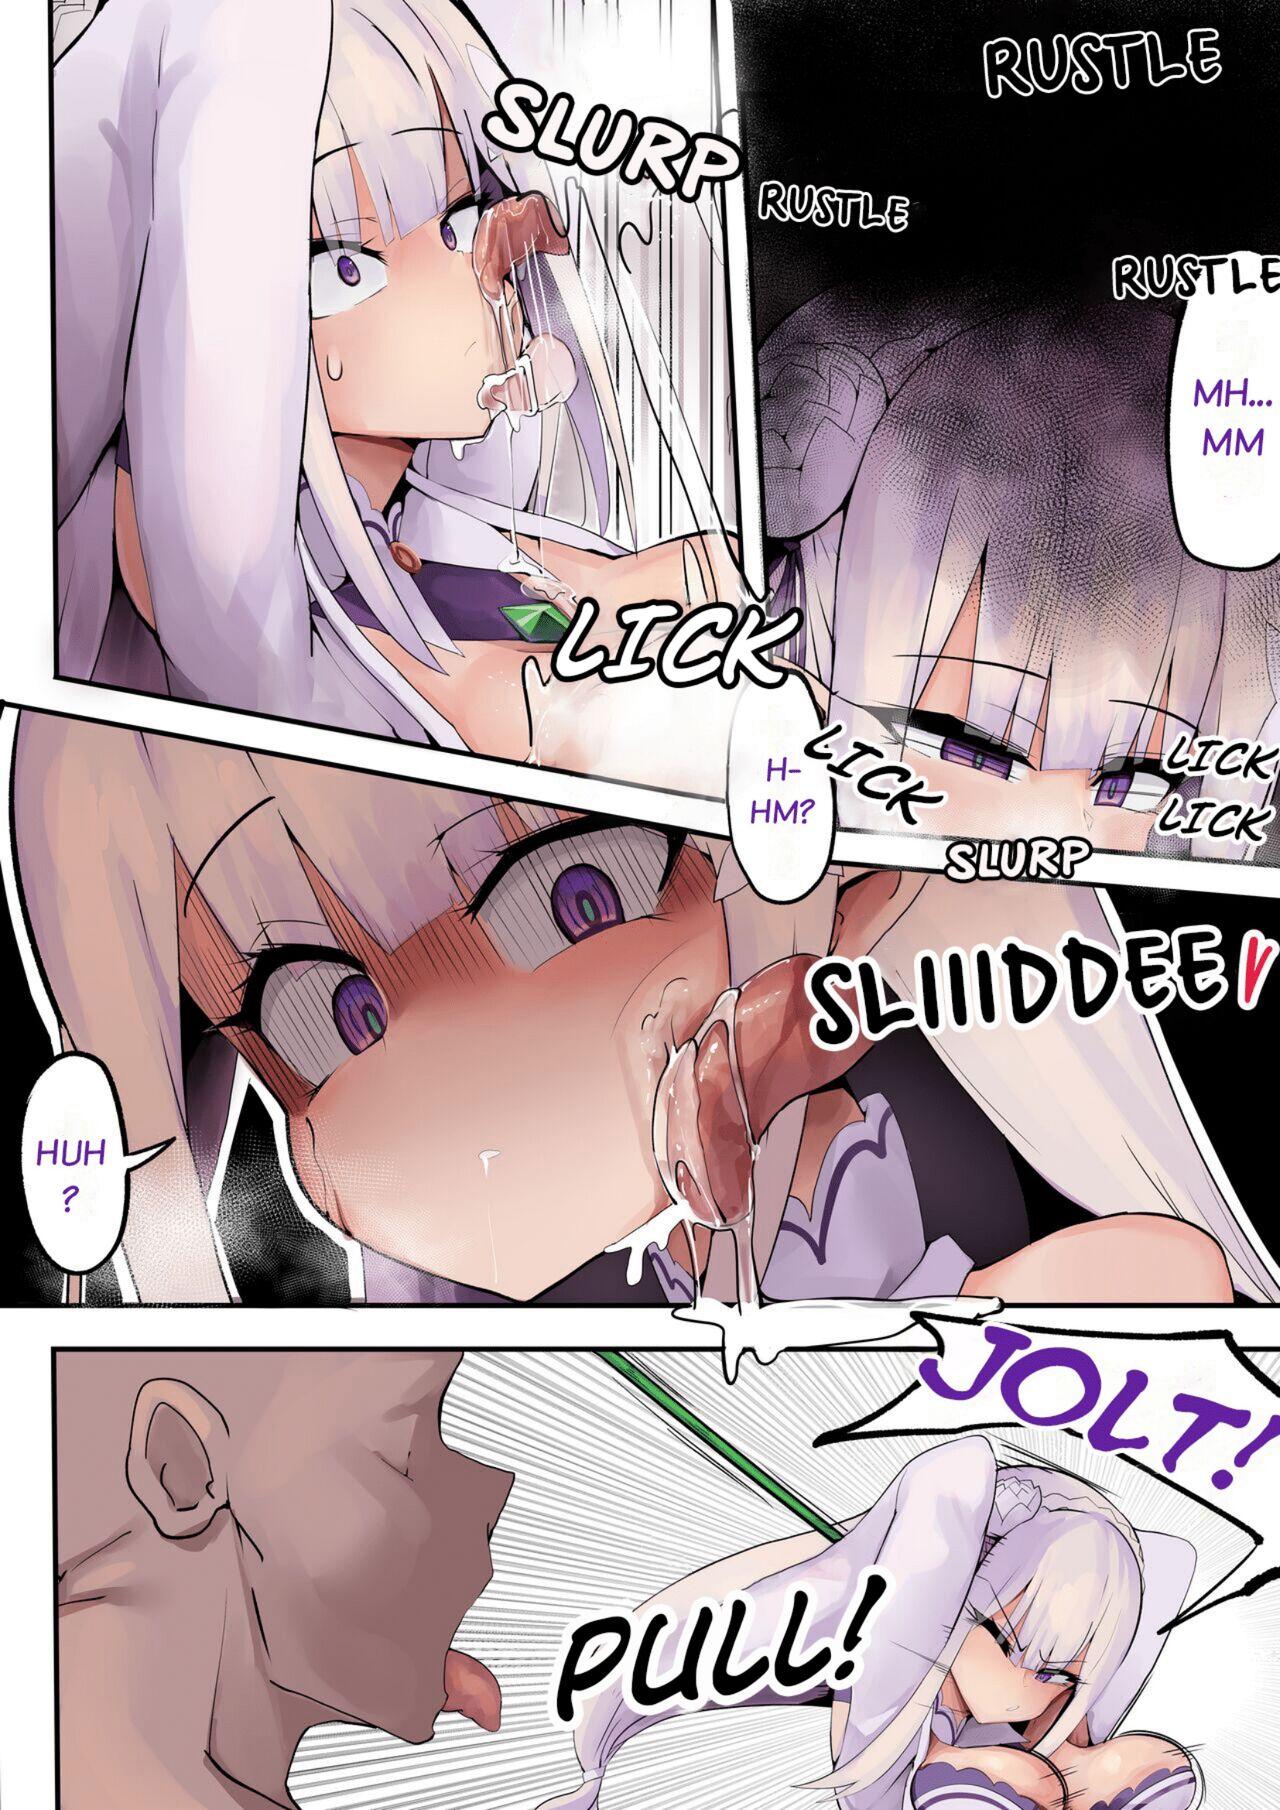 Compilation Emilia Learns to Master the Art of Having Sex - Re zero kara hajimeru isekai seikatsu Self - Page 7